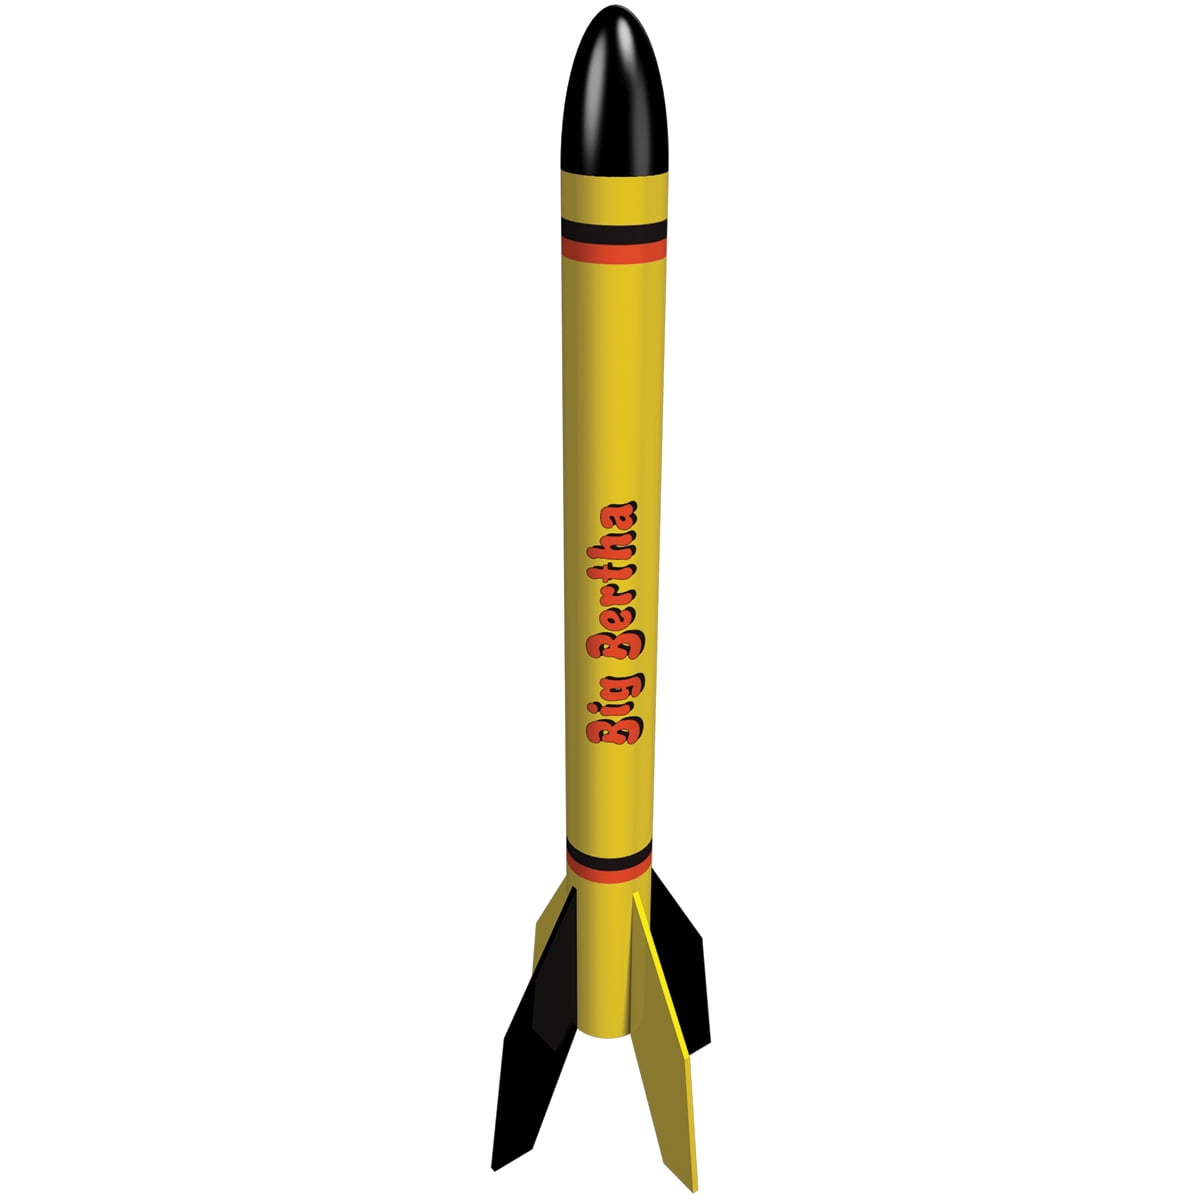 Estes Est7249 Expedition Rocket Kit Skill Level 4 for sale online 